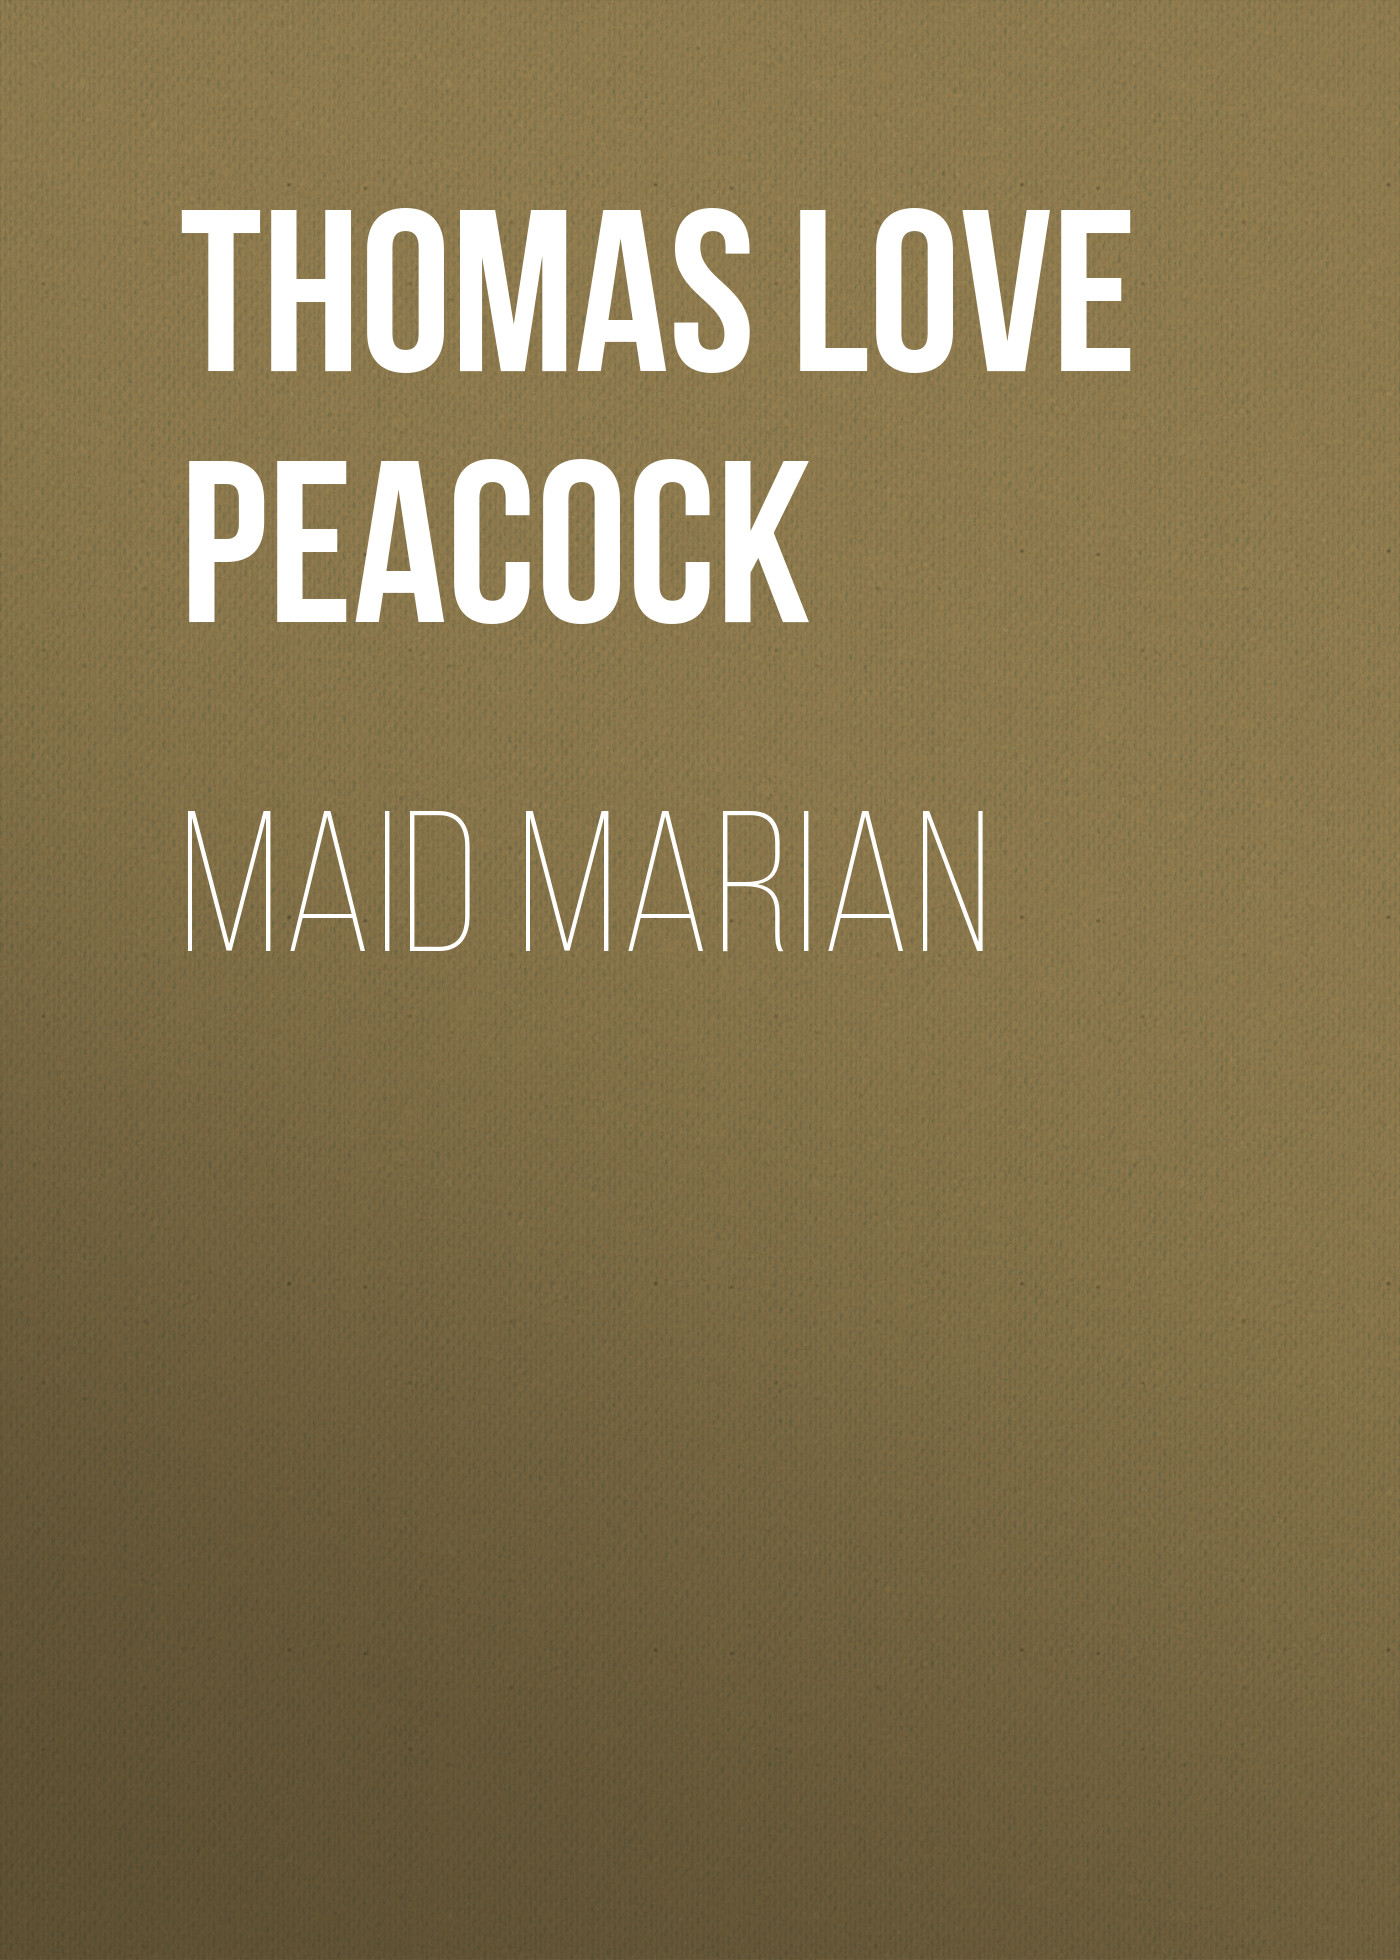 Книга Maid Marian из серии , созданная Thomas Love Peacock, может относится к жанру Зарубежная старинная литература, Зарубежная классика, Исторические приключения, Зарубежные любовные романы, Историческая фантастика. Стоимость электронной книги Maid Marian с идентификатором 36365238 составляет 0 руб.